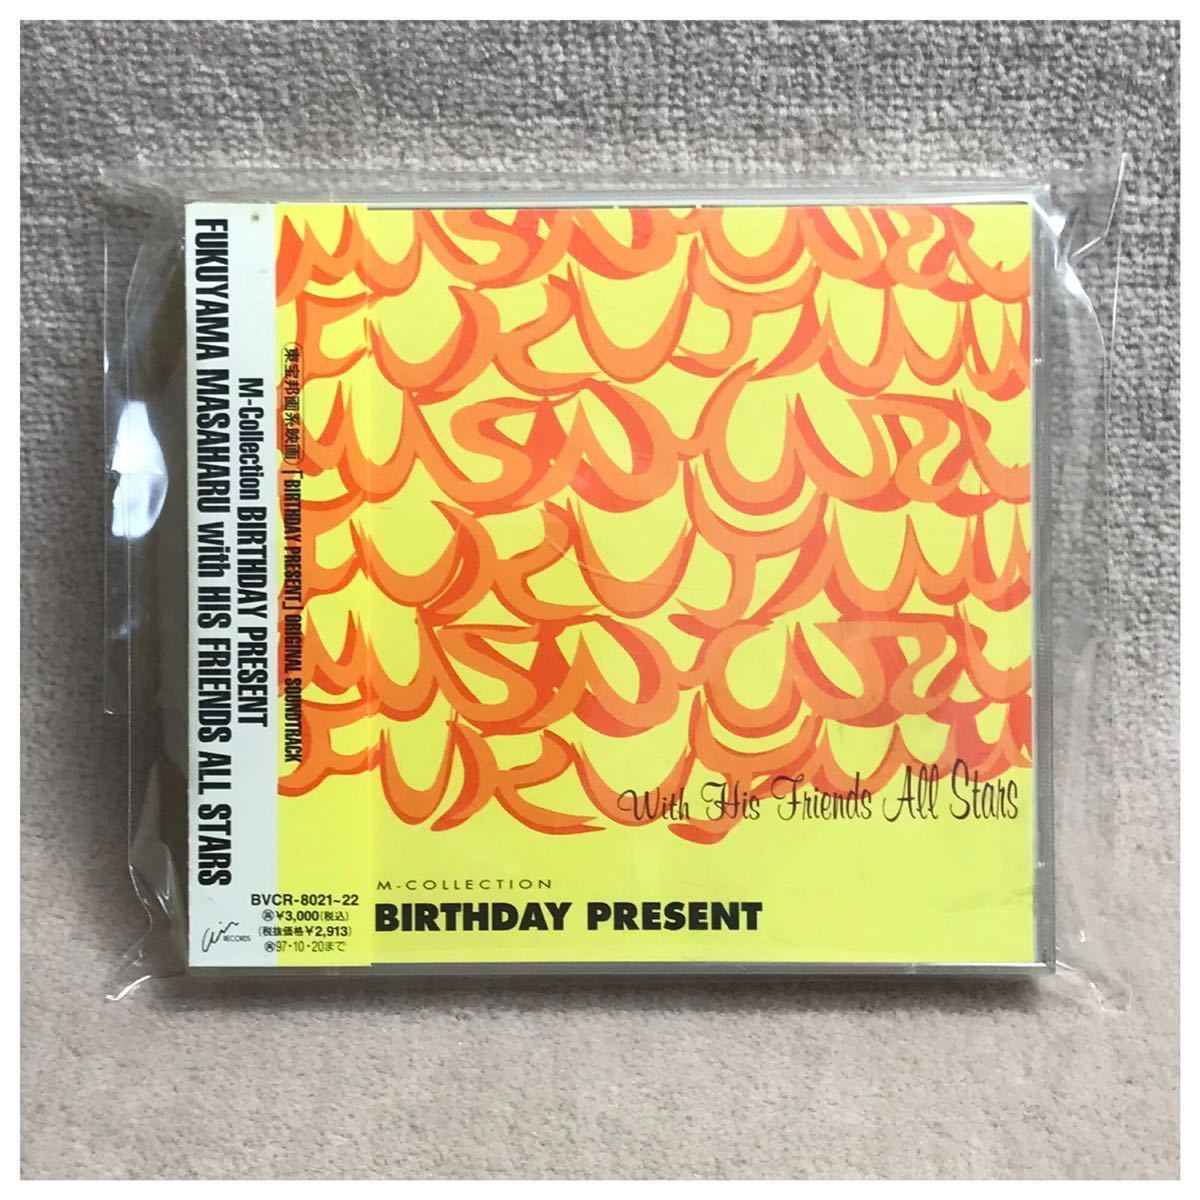 M-Collection День рождения подарок / Масахару Фукуяма &lt;&lt; 2 CD с OBI &gt;&gt;